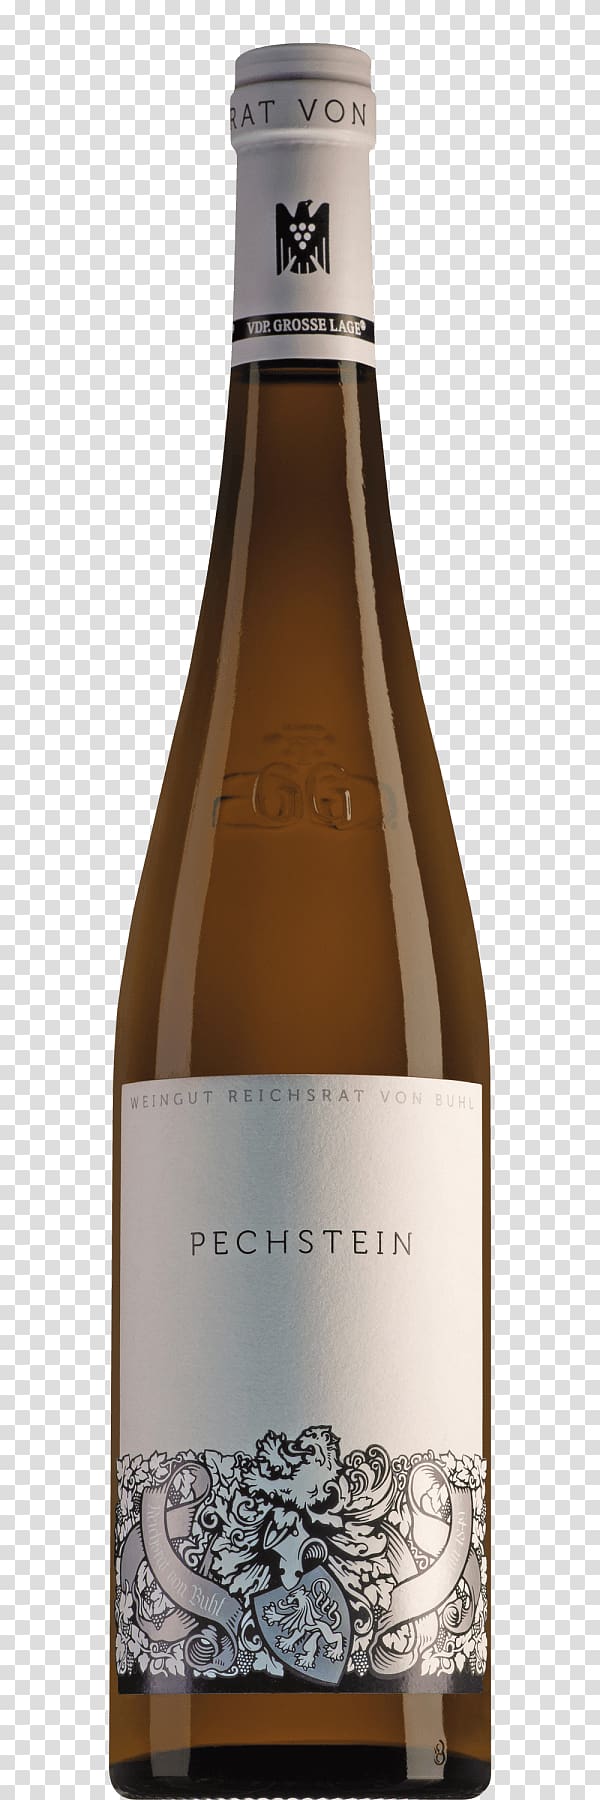 DeMorgenzon Stellenbosch Wine Liqueur Champagne, wine transparent background PNG clipart